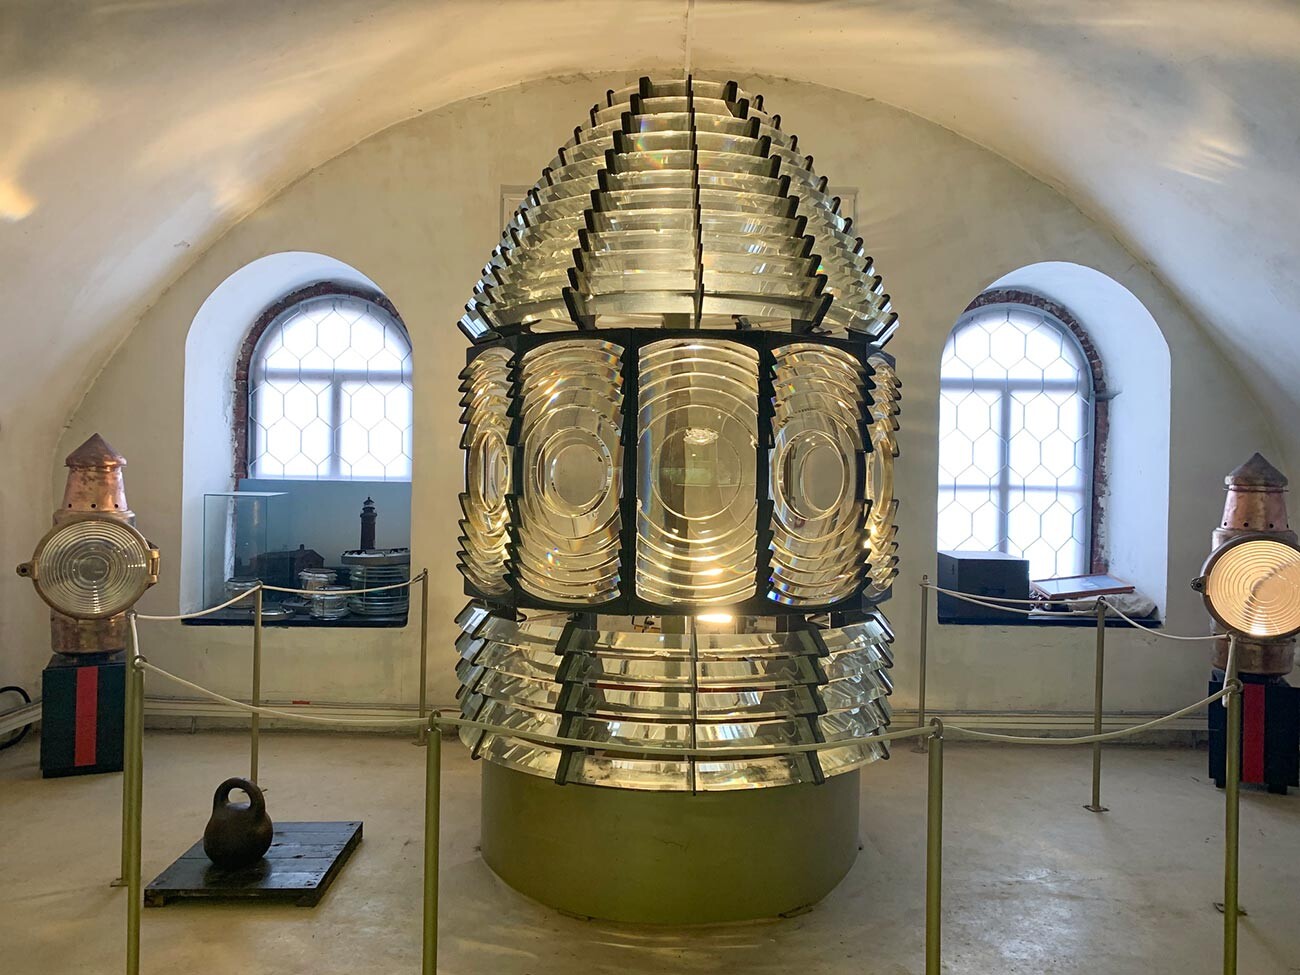 Вот такого гиганта можно увидеть в музее маячной службы на форте Константин.